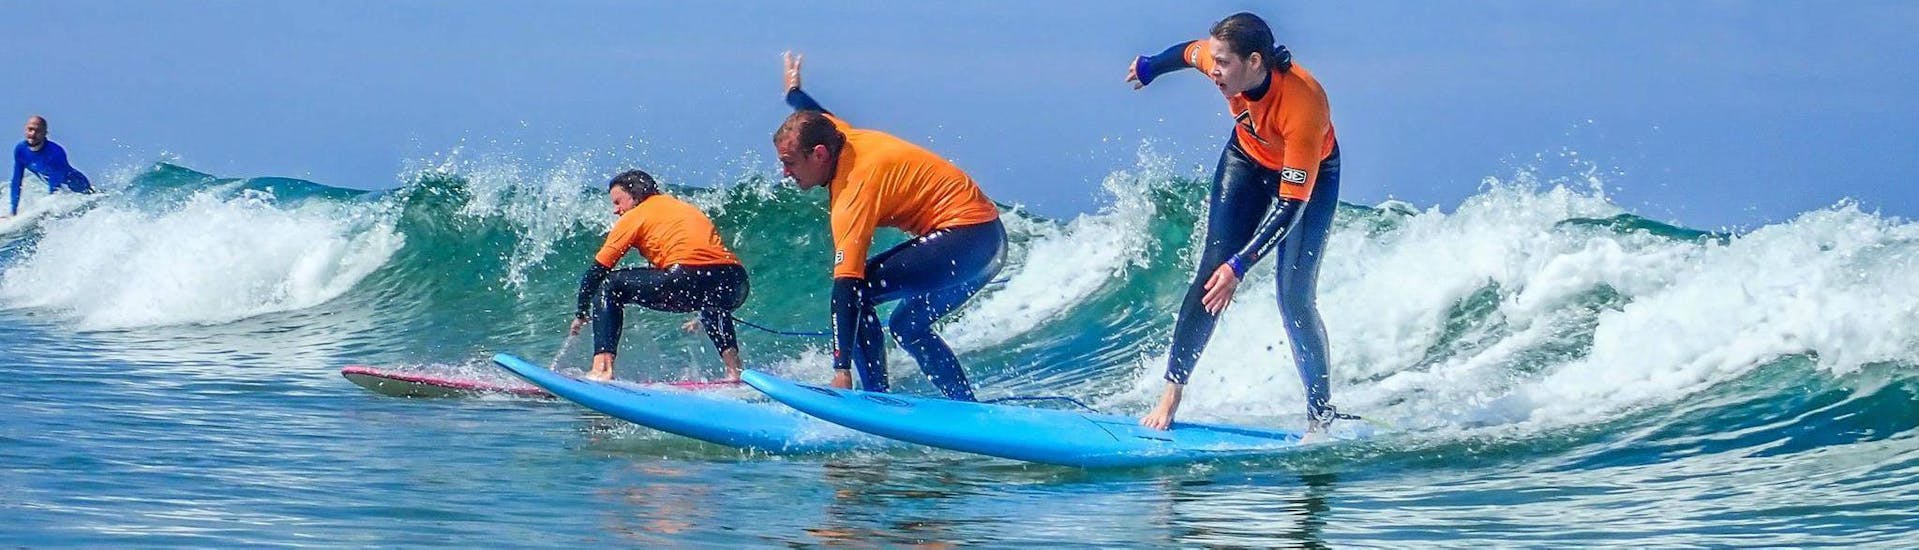 Surfkurs für Kinder & Erwachsene - Alle Levels.